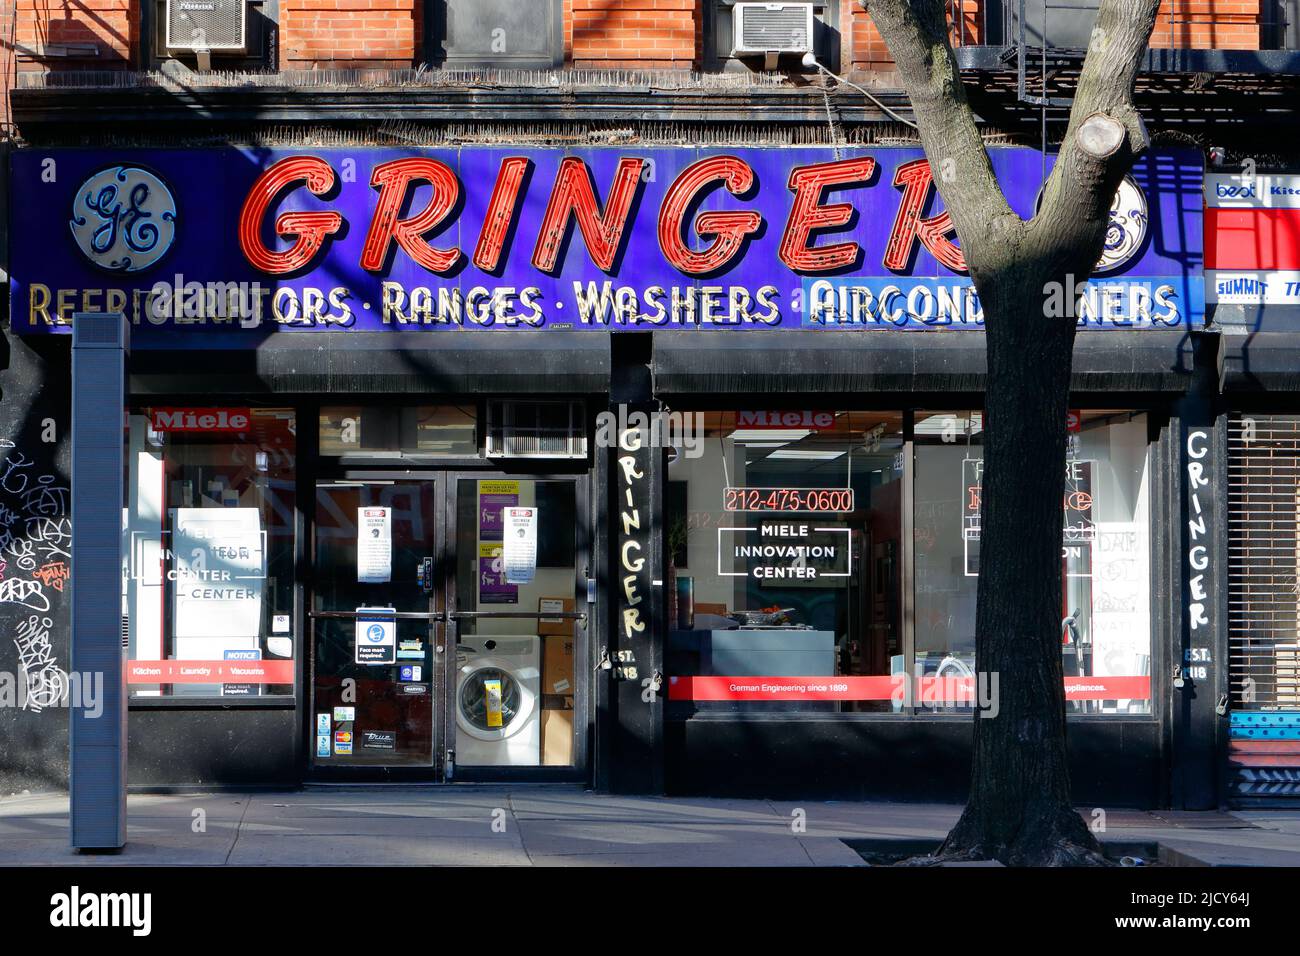 Gringer & Sons, 29 1st Ave., Nueva York, NY. Escaparate exterior de una tienda de electrodomésticos en el barrio de East Village en Manhattan. Foto de stock